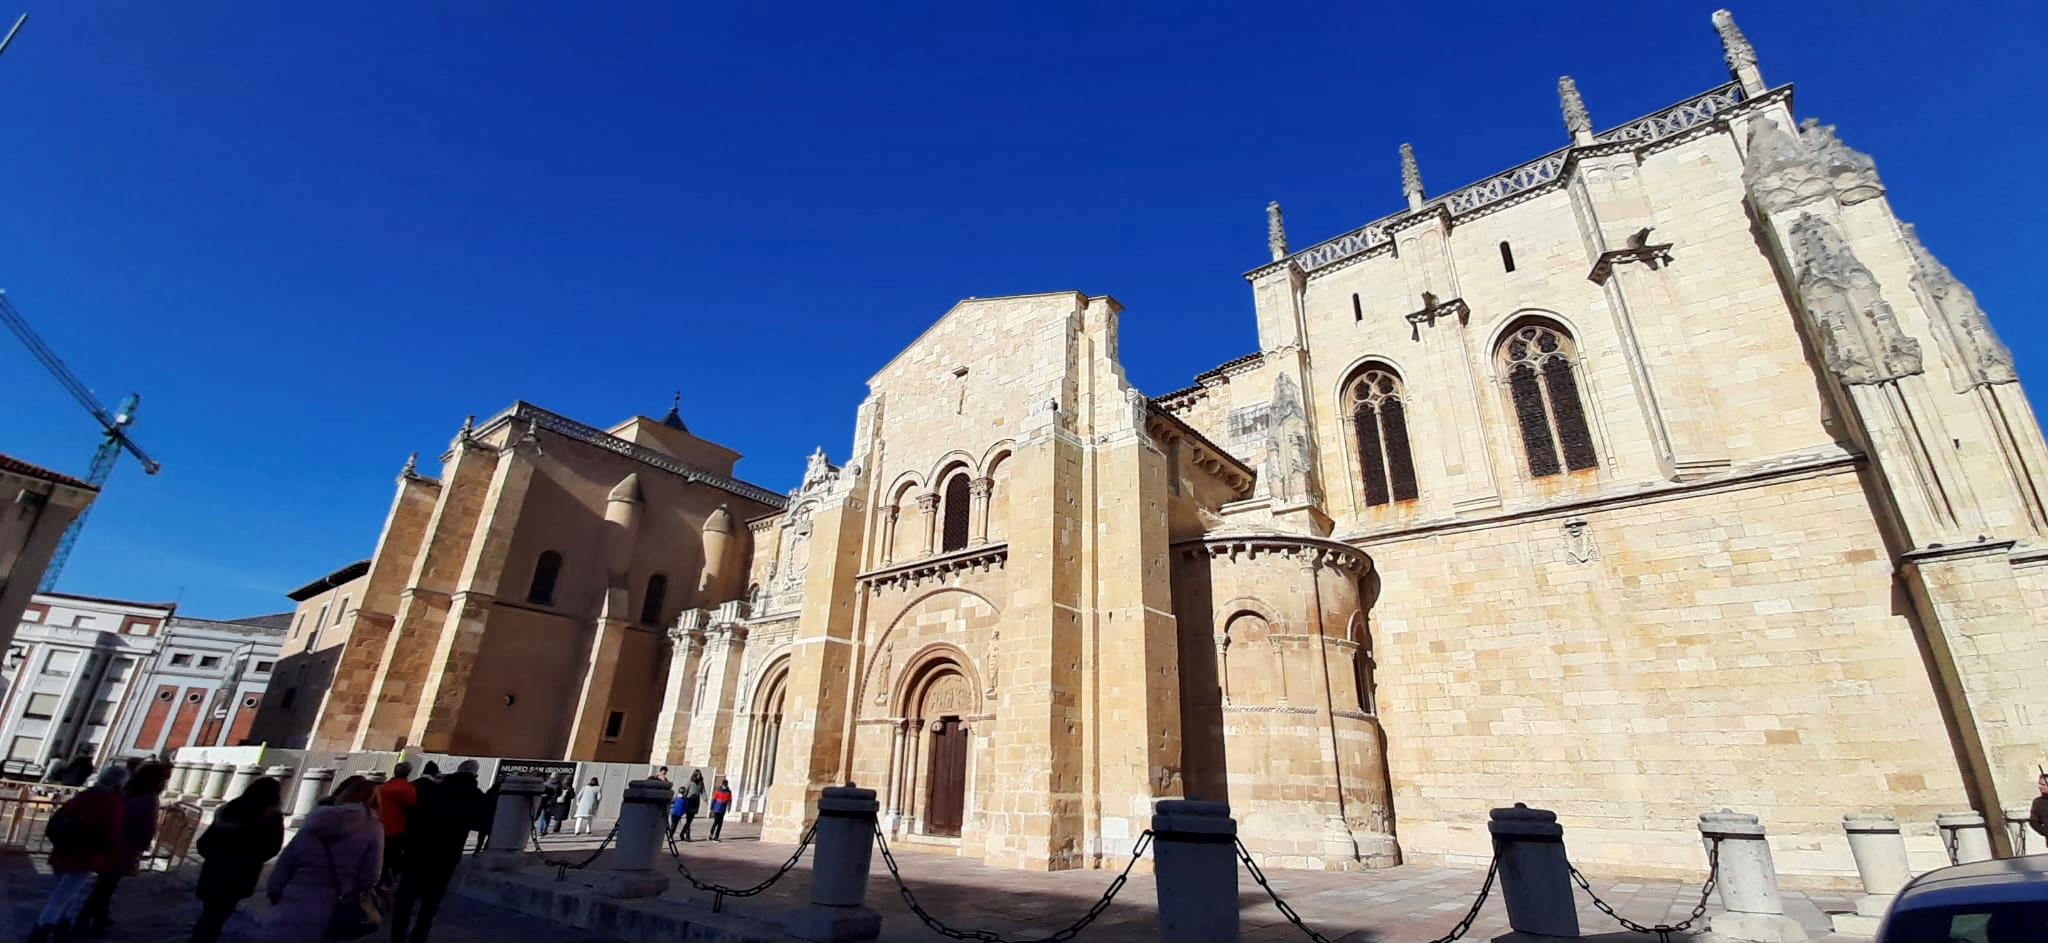 Monasterio-y-Basilica-de-San-Isidoro-5